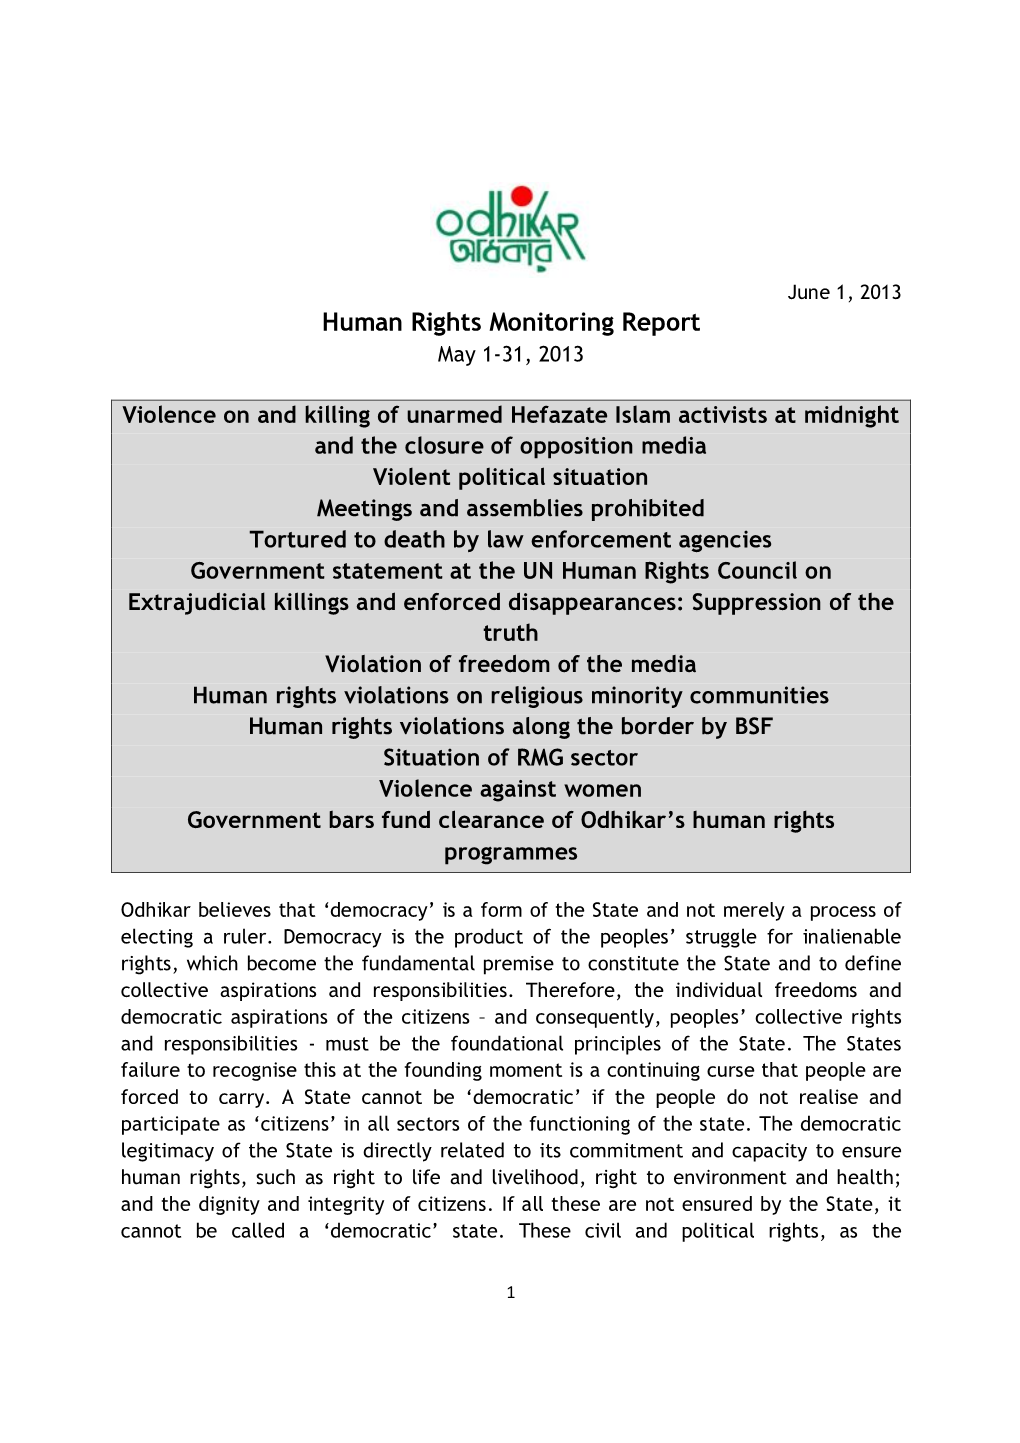 Human Rights Monitoring Report May 1-31, 2013